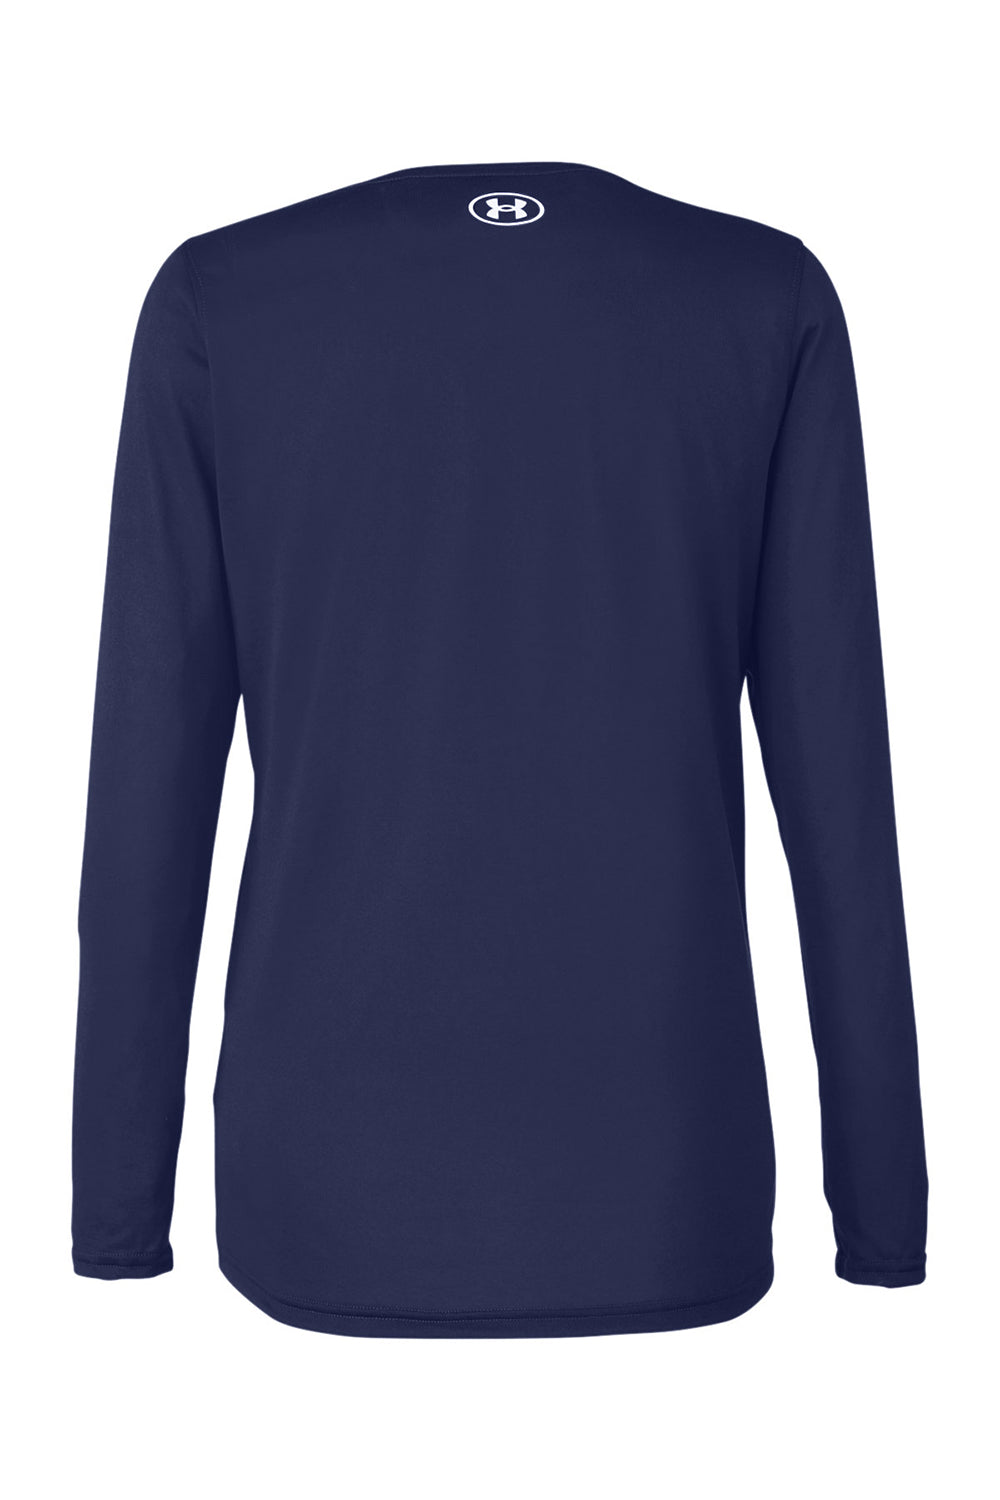 Under Armour 1376852 Womens Team Tech Moisture Wicking Long Sleeve Crewneck T-Shirt Midnight Navy Blue Flat Back